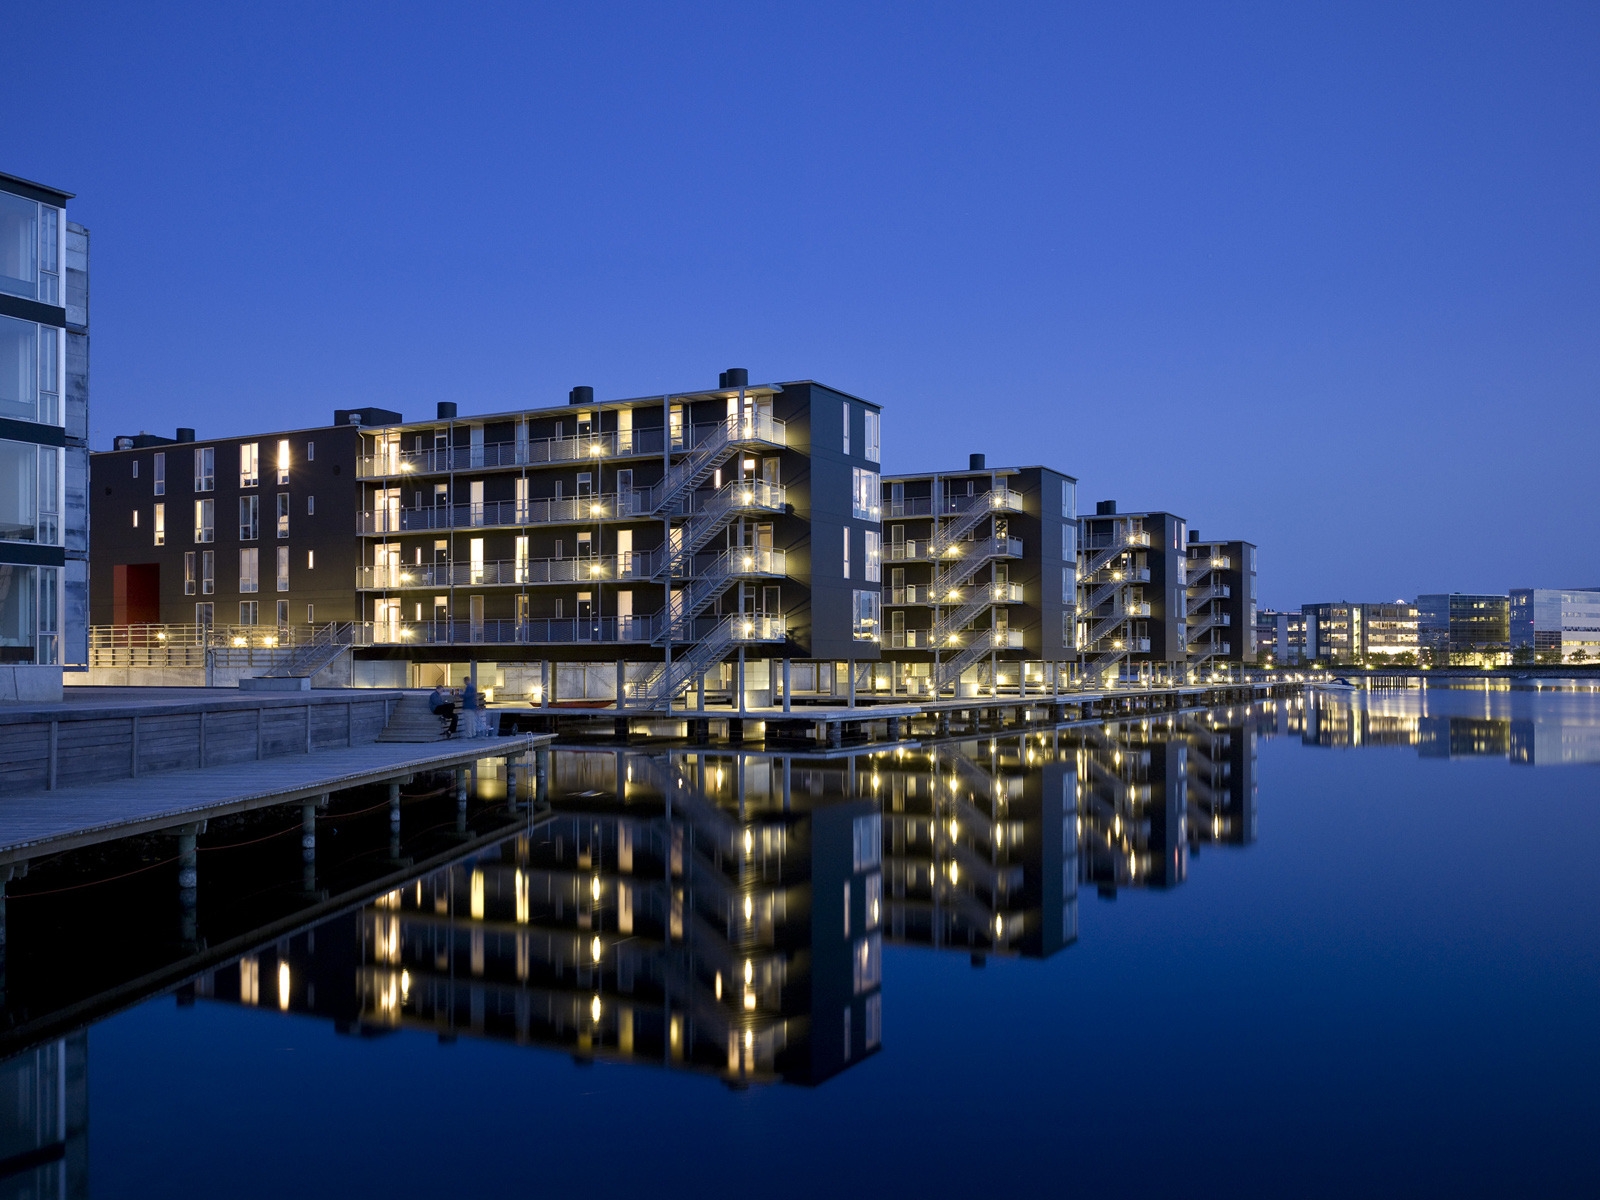 Teglvrkshavnen Block in Copenhagen for 1600 x 1200 resolution